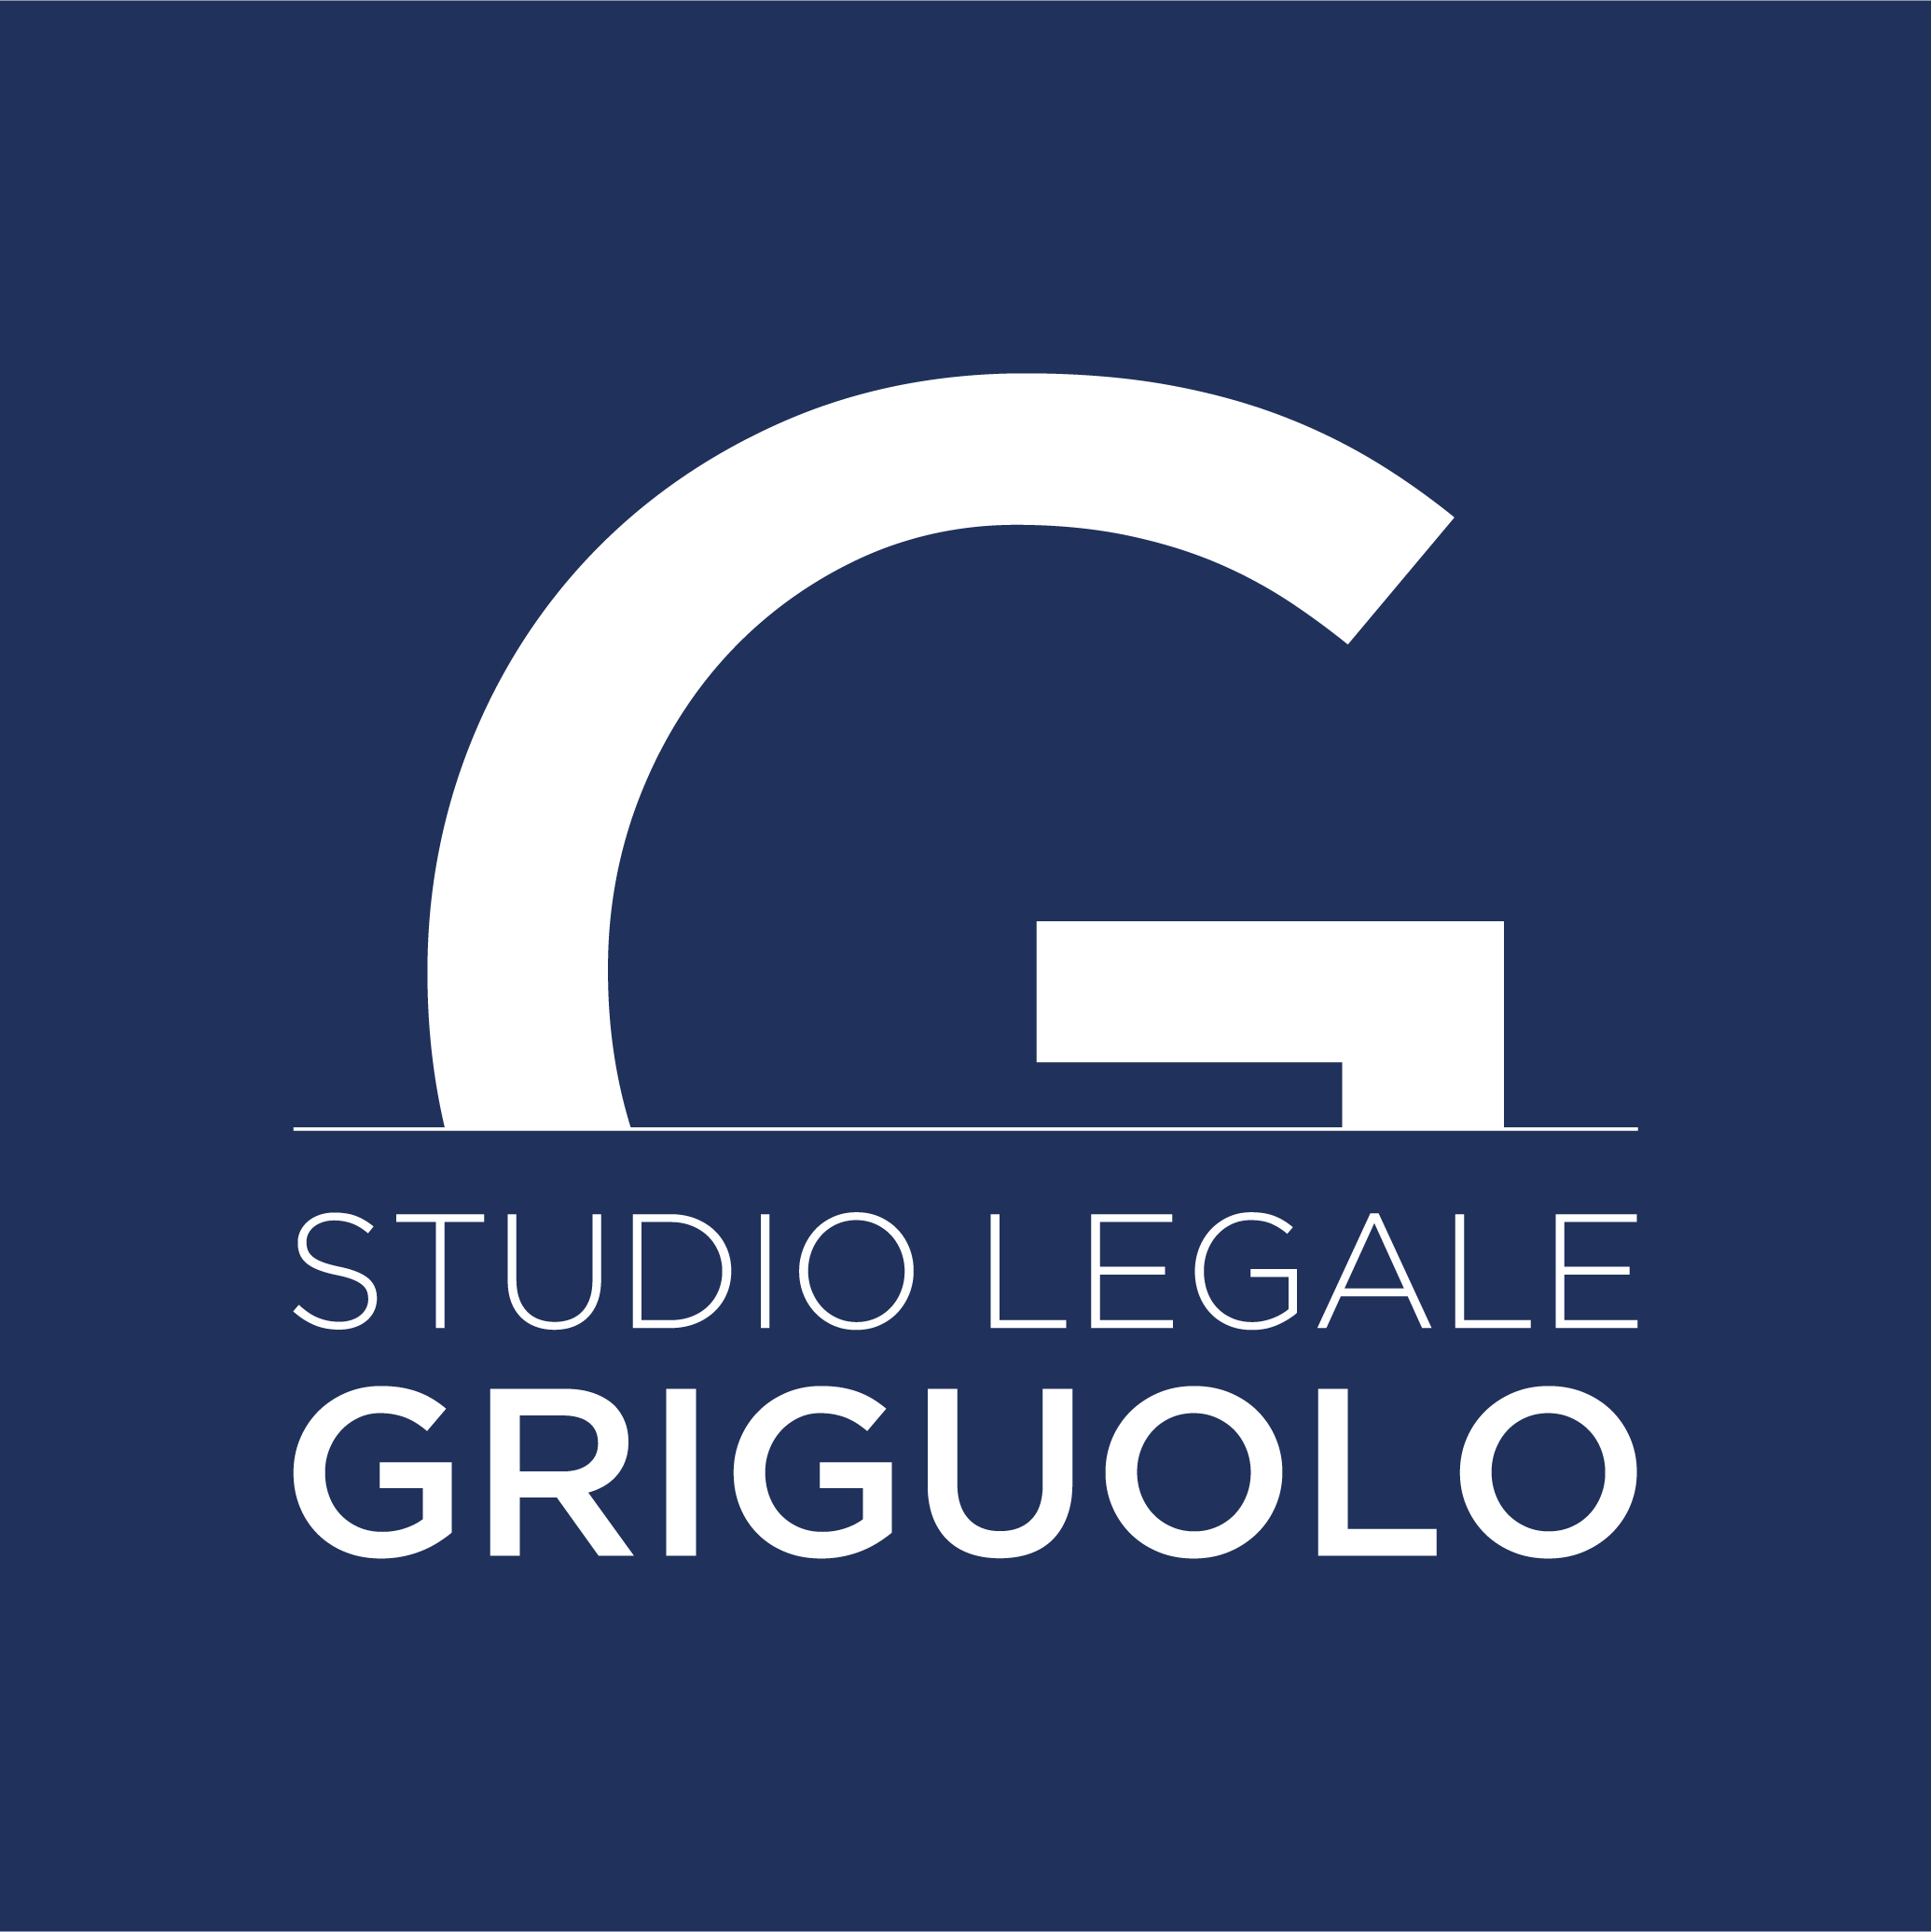 Studio Legale Griguolo